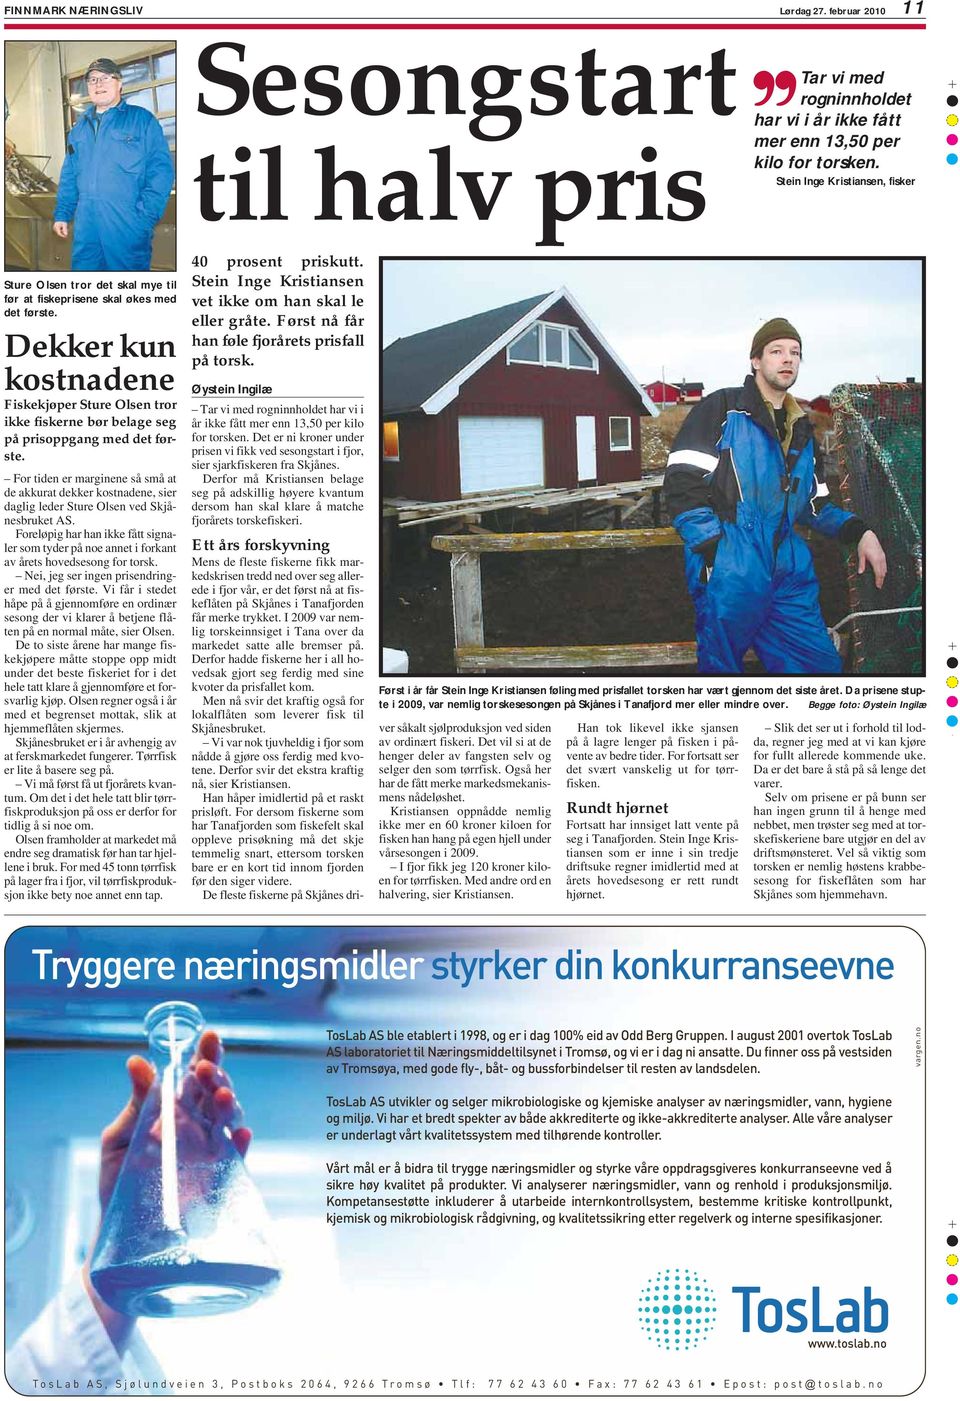 Dekker kun kostnadene Fiskekjøper Sture Olsen tror ikke fiskerne bør belage seg på prisoppgang med det første.